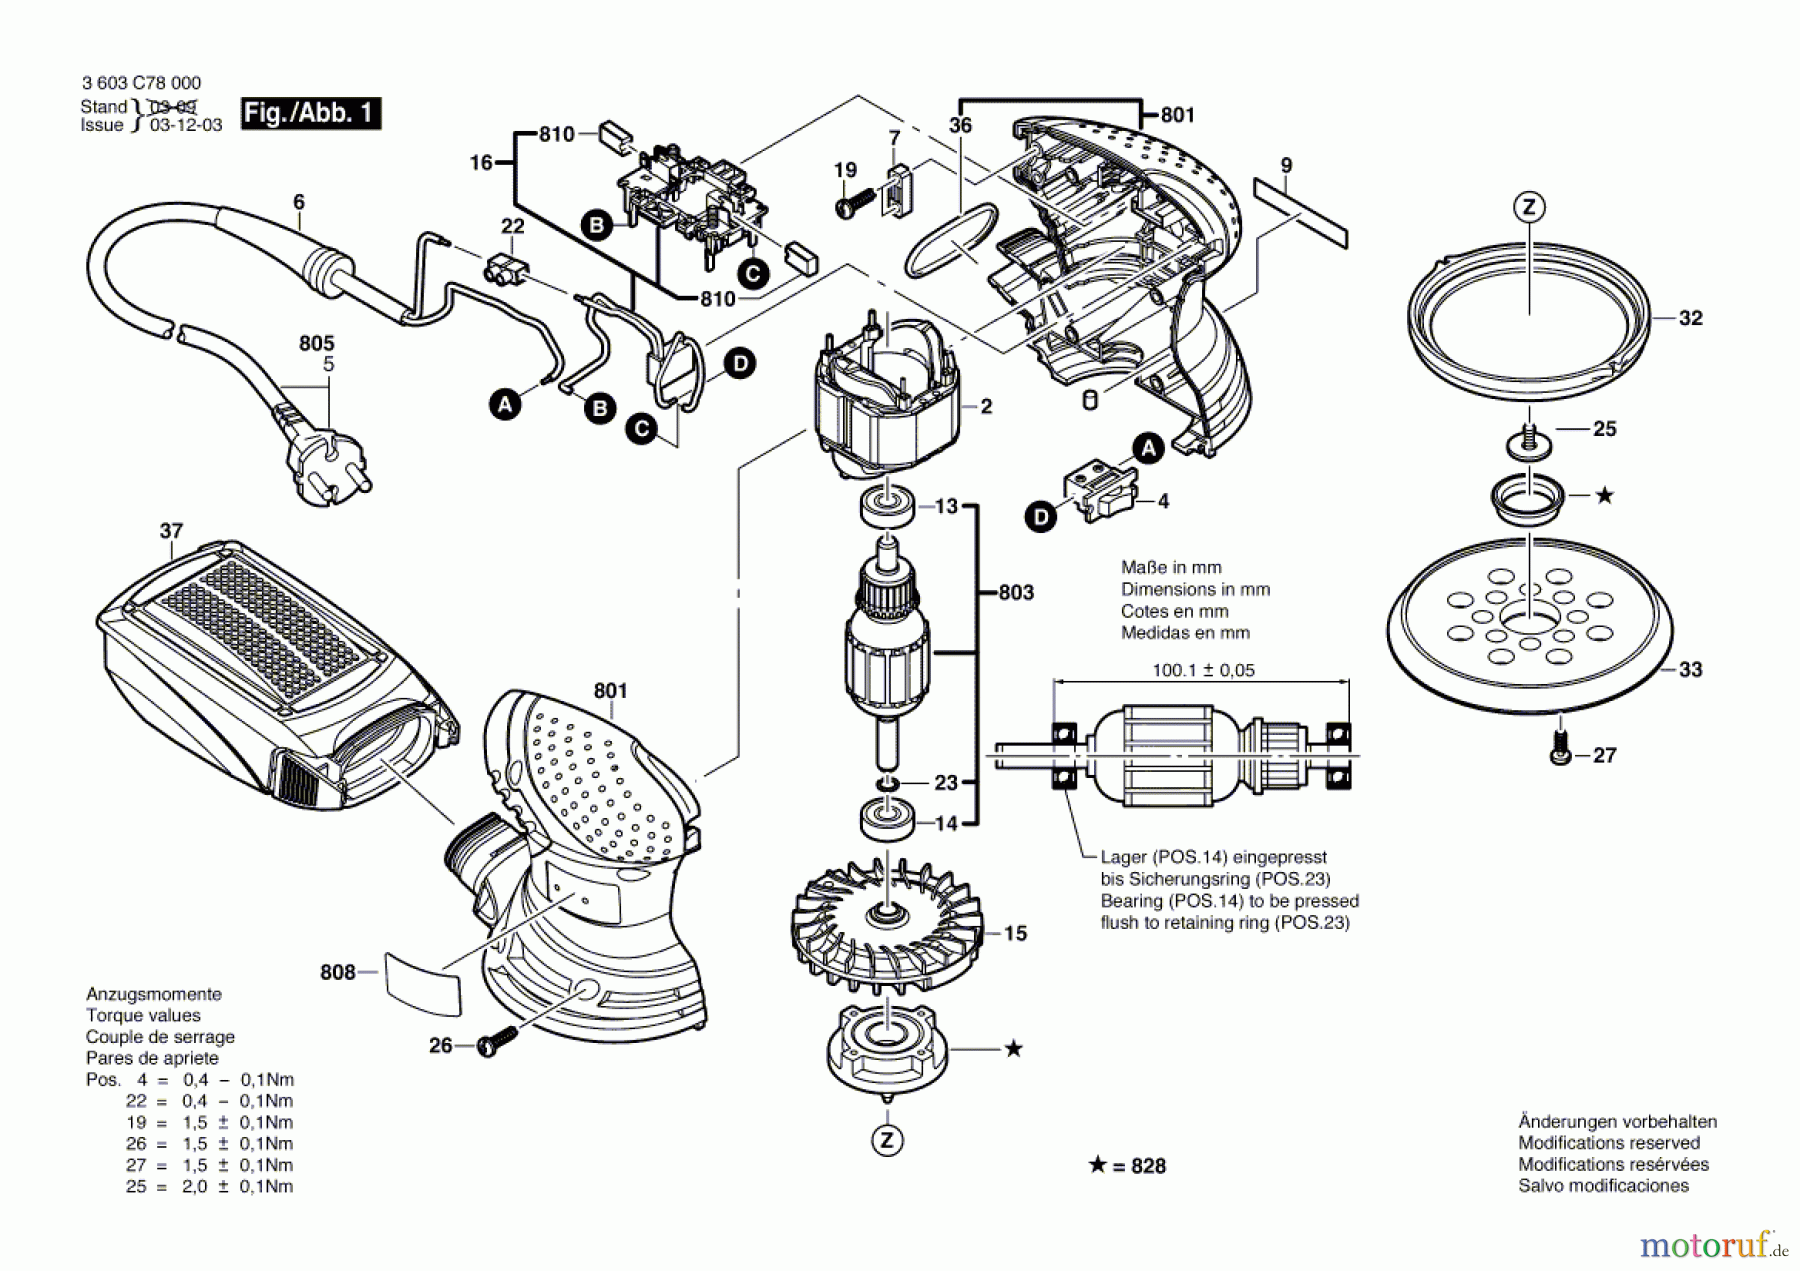  Bosch Werkzeug Exzenterschleifer PEX 220 A Seite 1